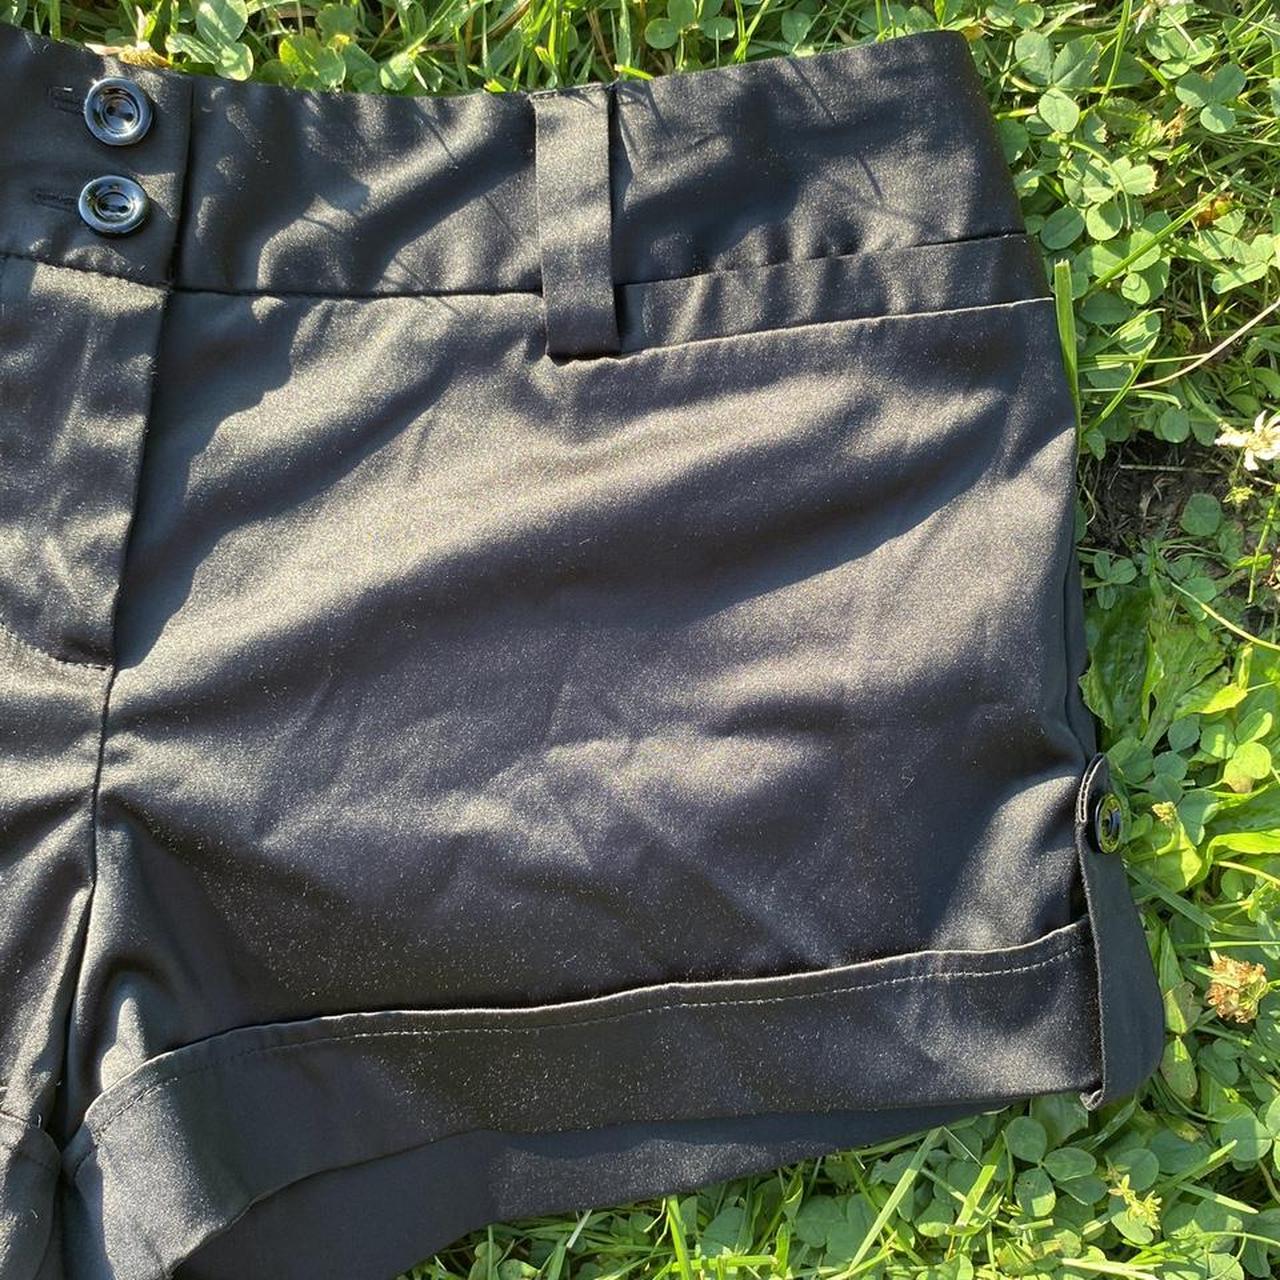 Product Image 3 - Vintage black satin shorts

Brand: IZ